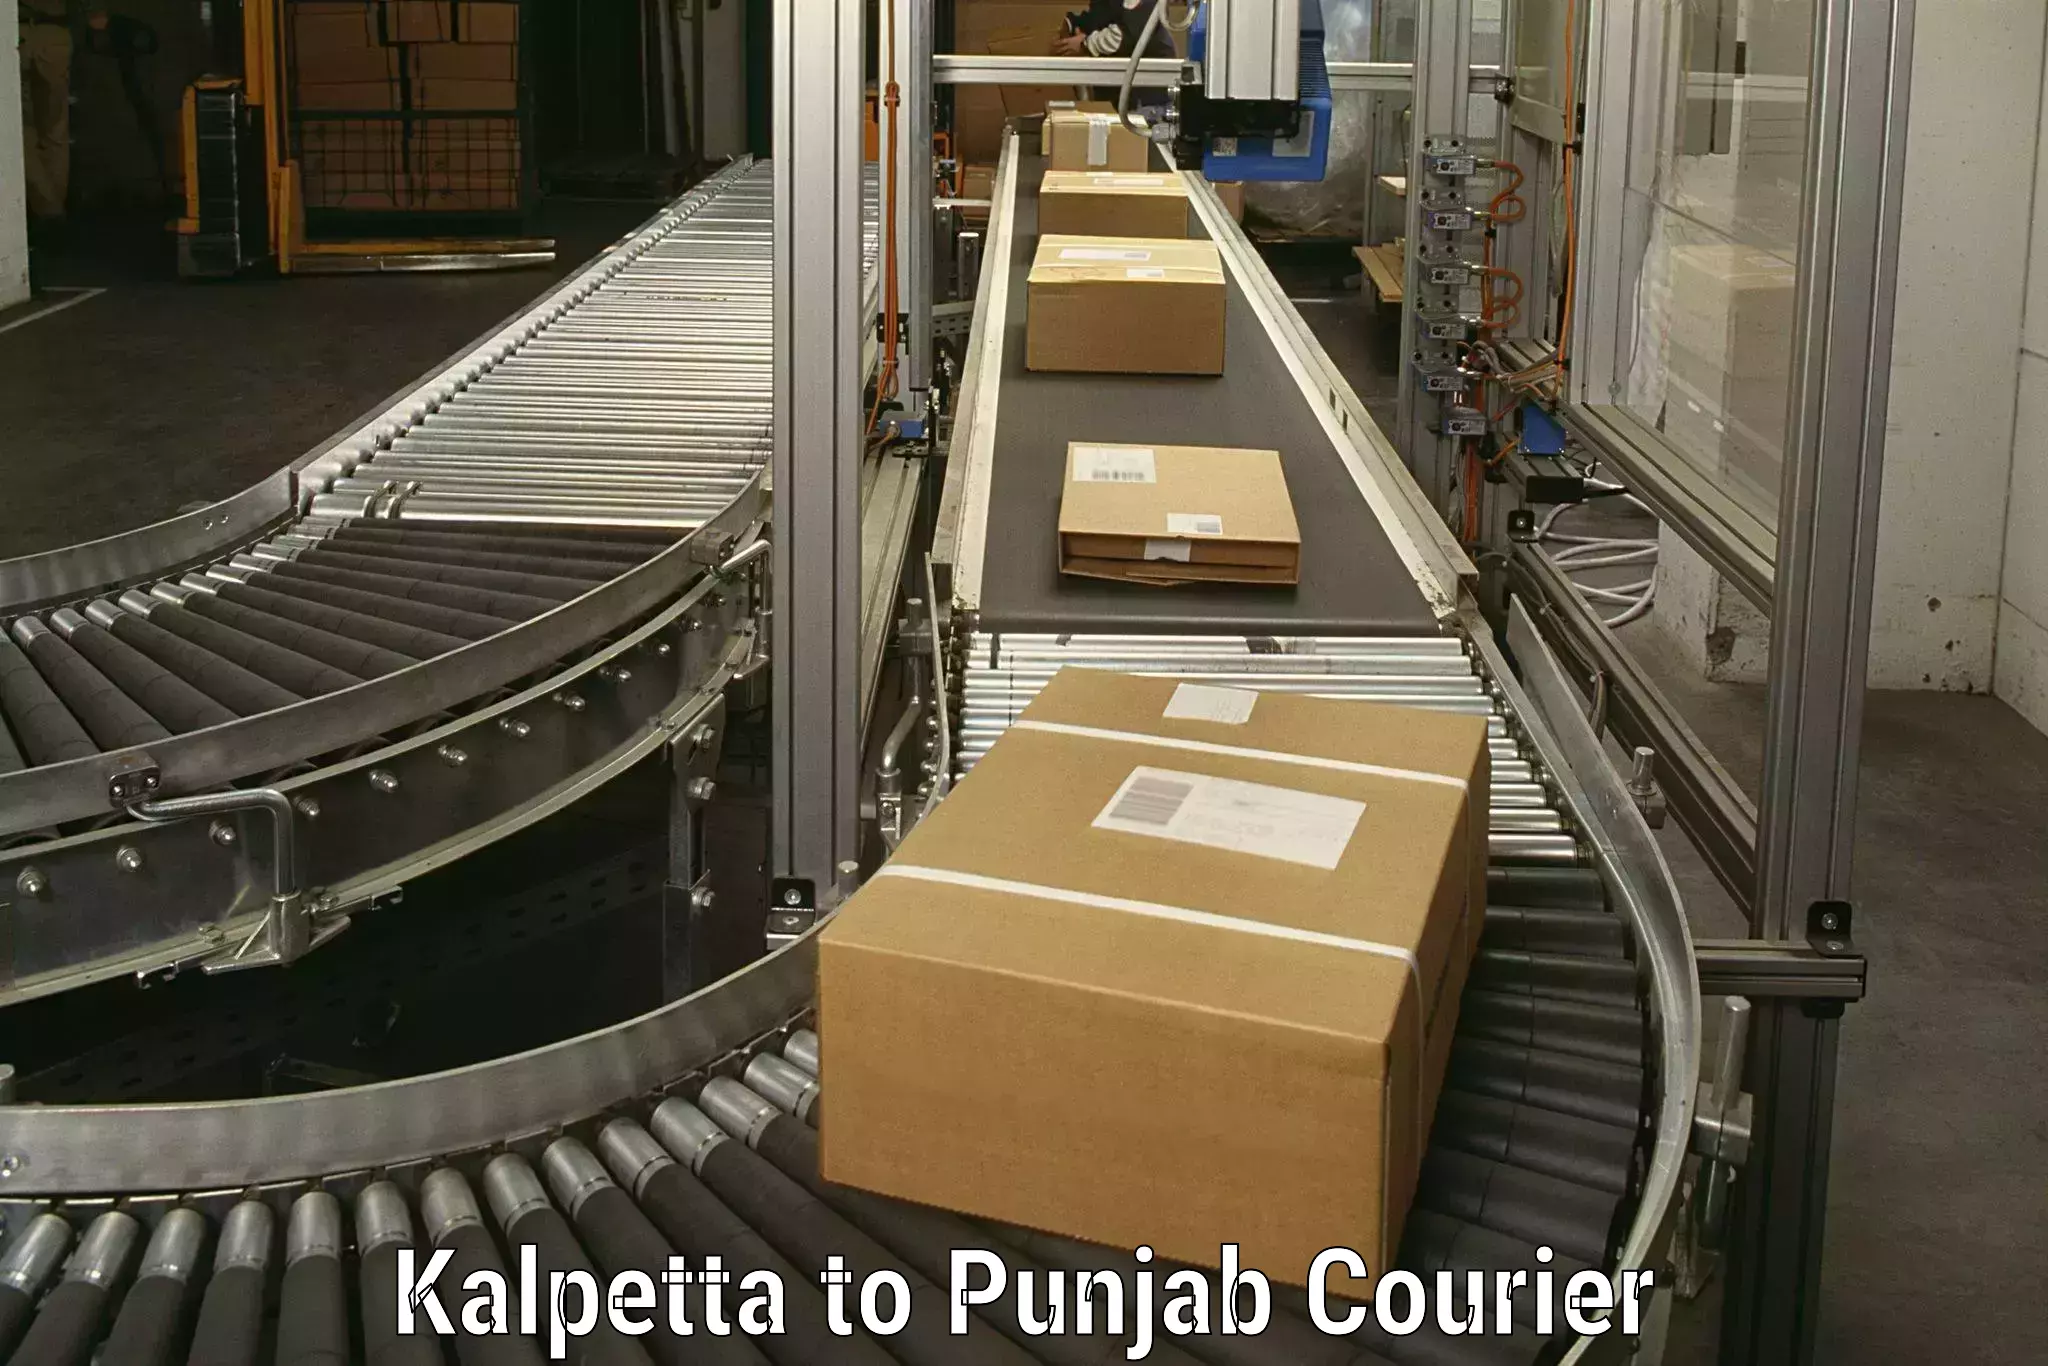 Professional packing services Kalpetta to Gurdaspur